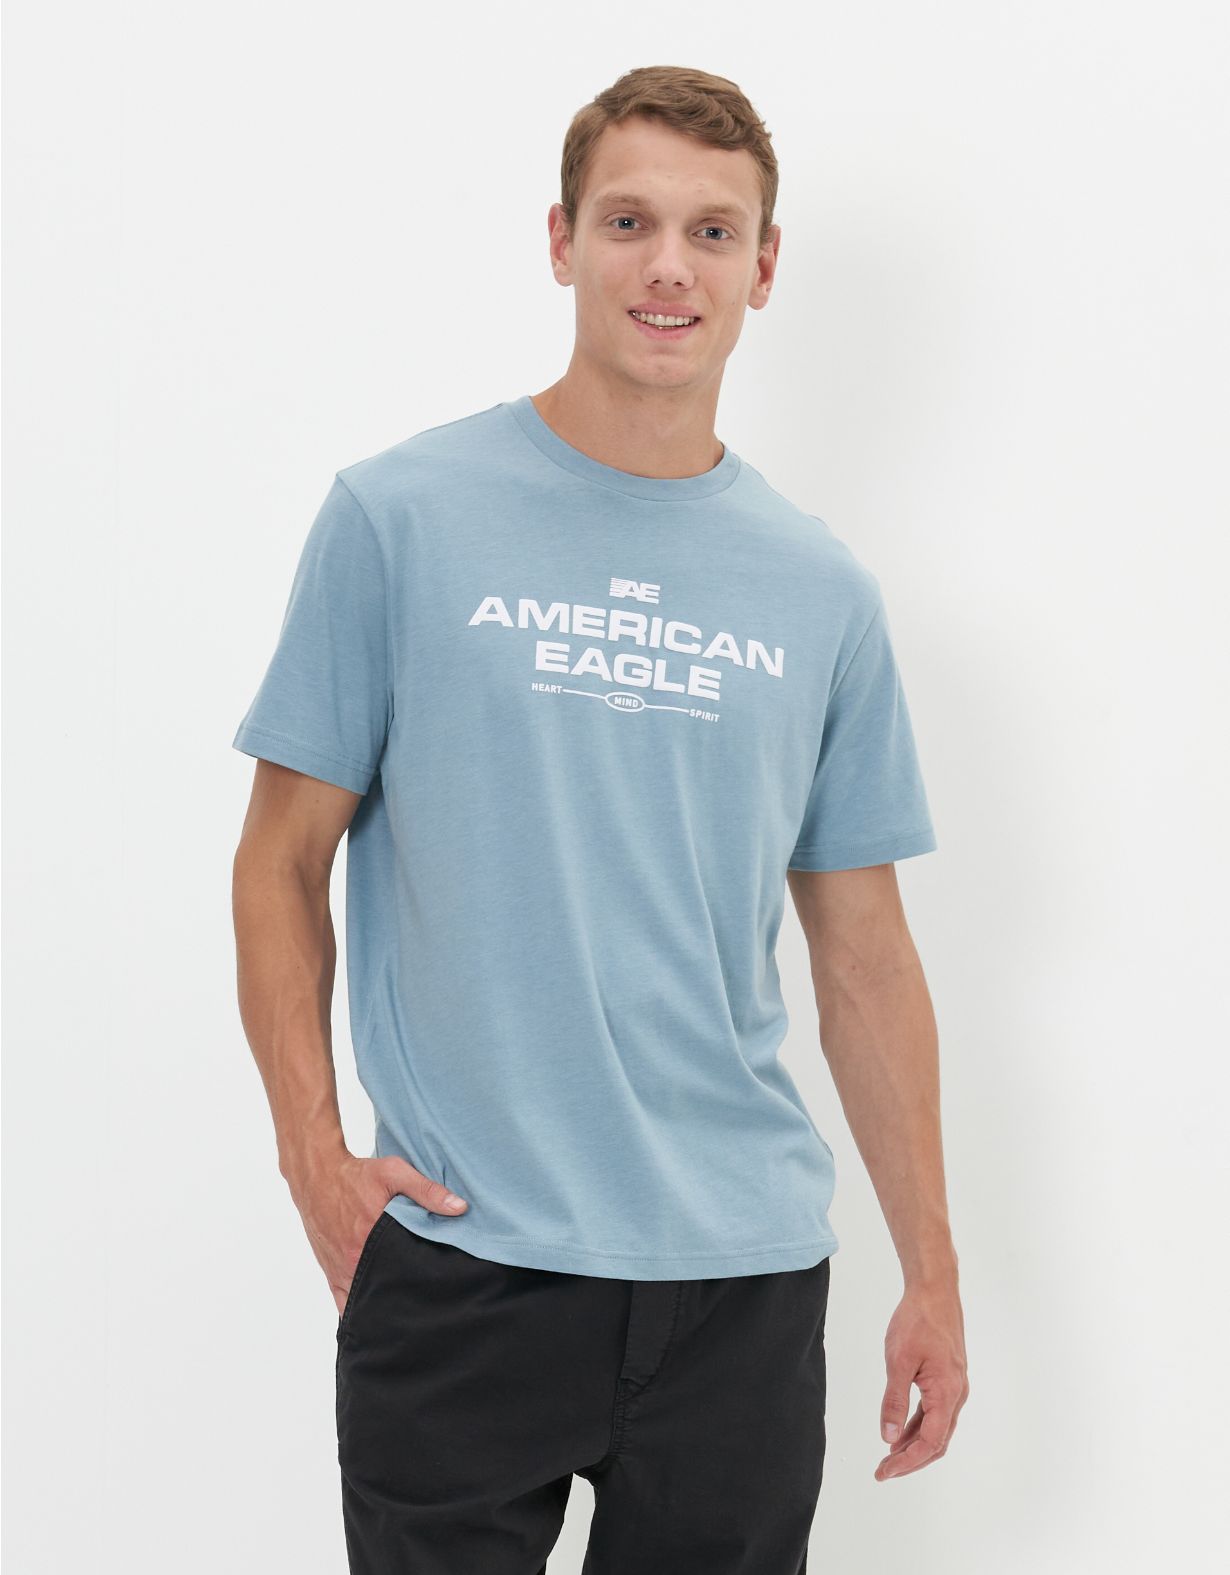 AE 24/7 Graphic T-Shirt